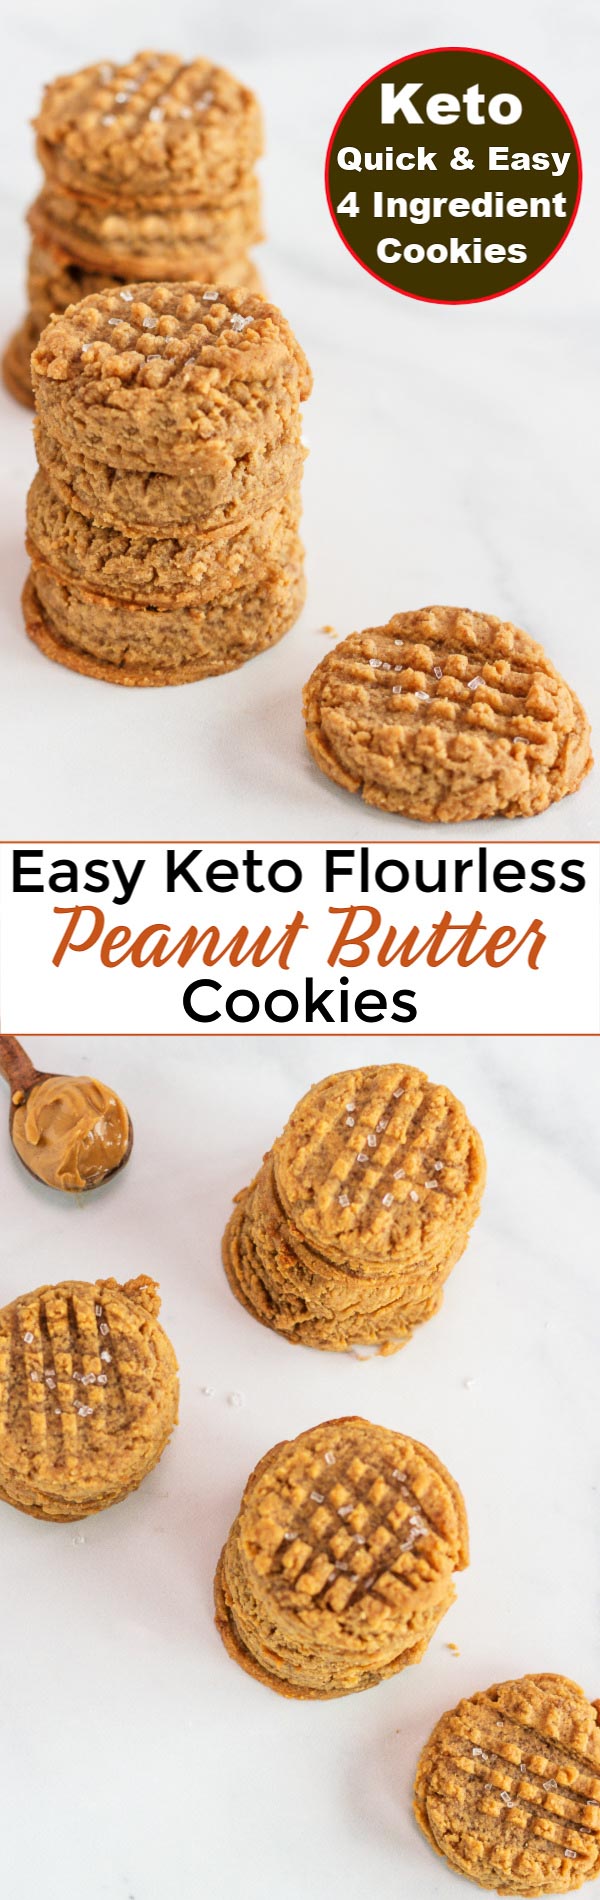 Keto Peanut Butter Cookies Flourless